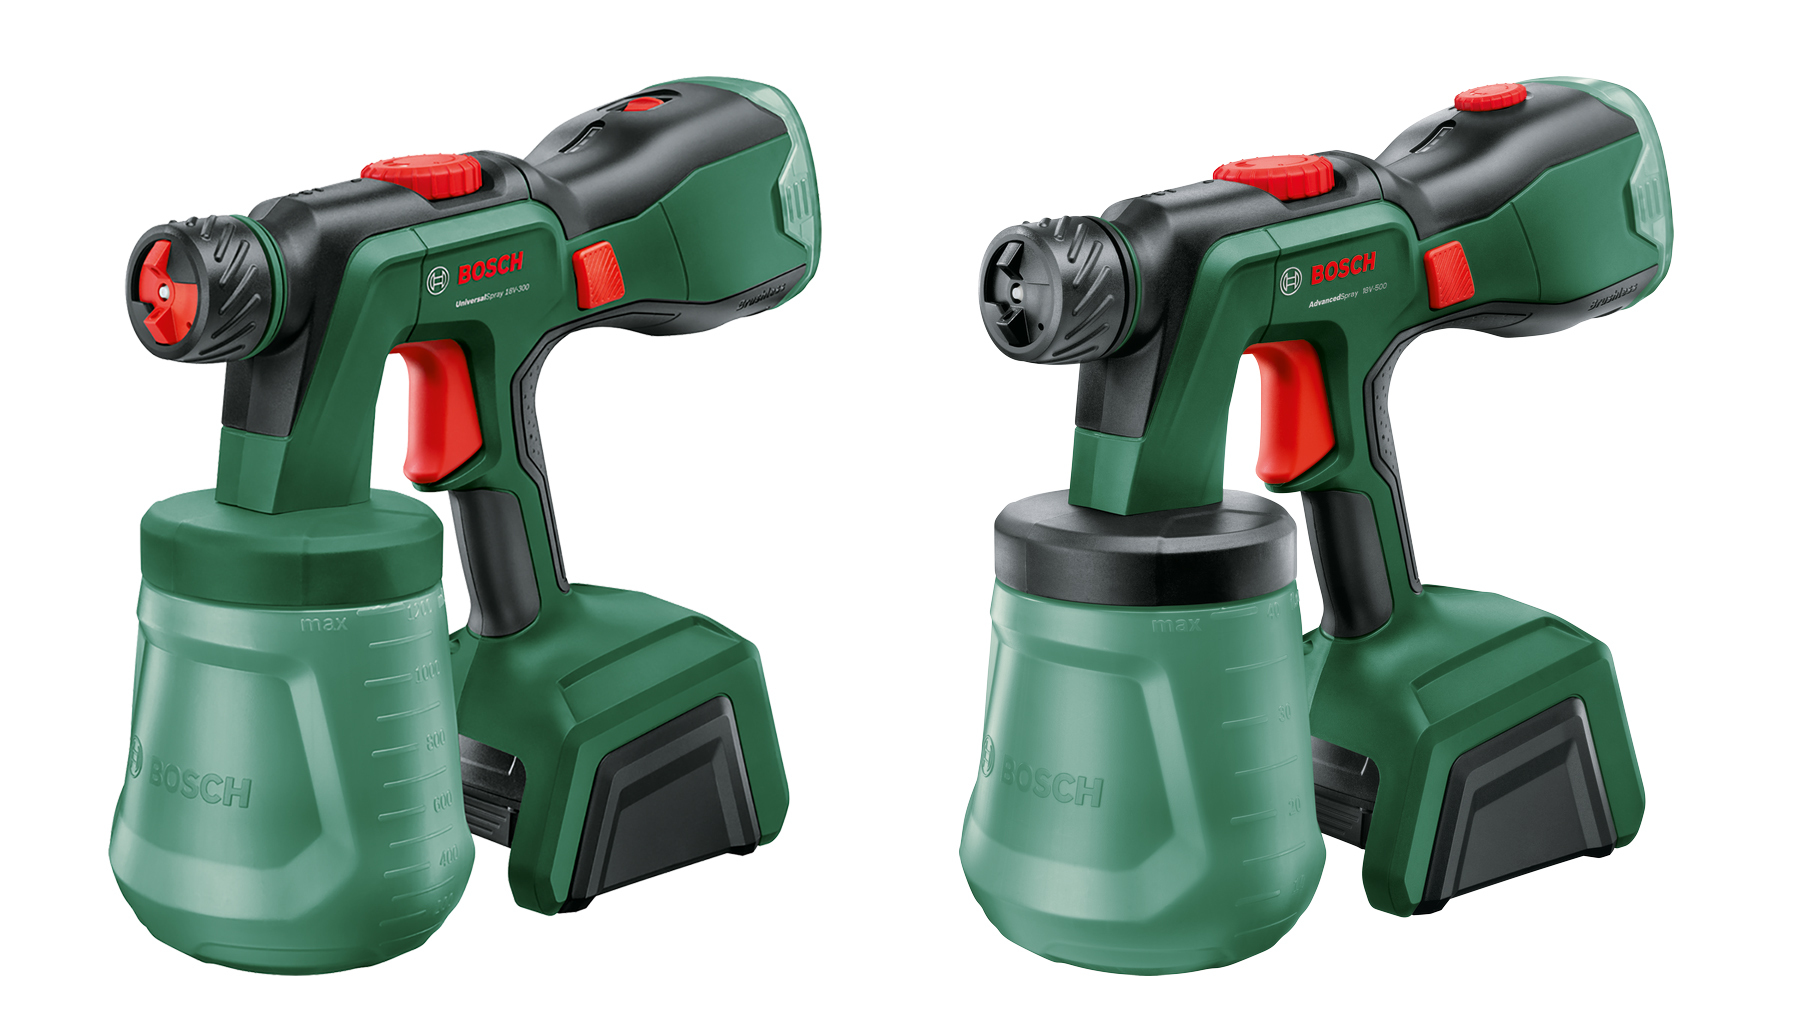 Universal Spray 18 V 300 und Advanced Spray 18 V 500 komplettieren Akku Farbsprüh Portfolio von Bosch für Heimwerker